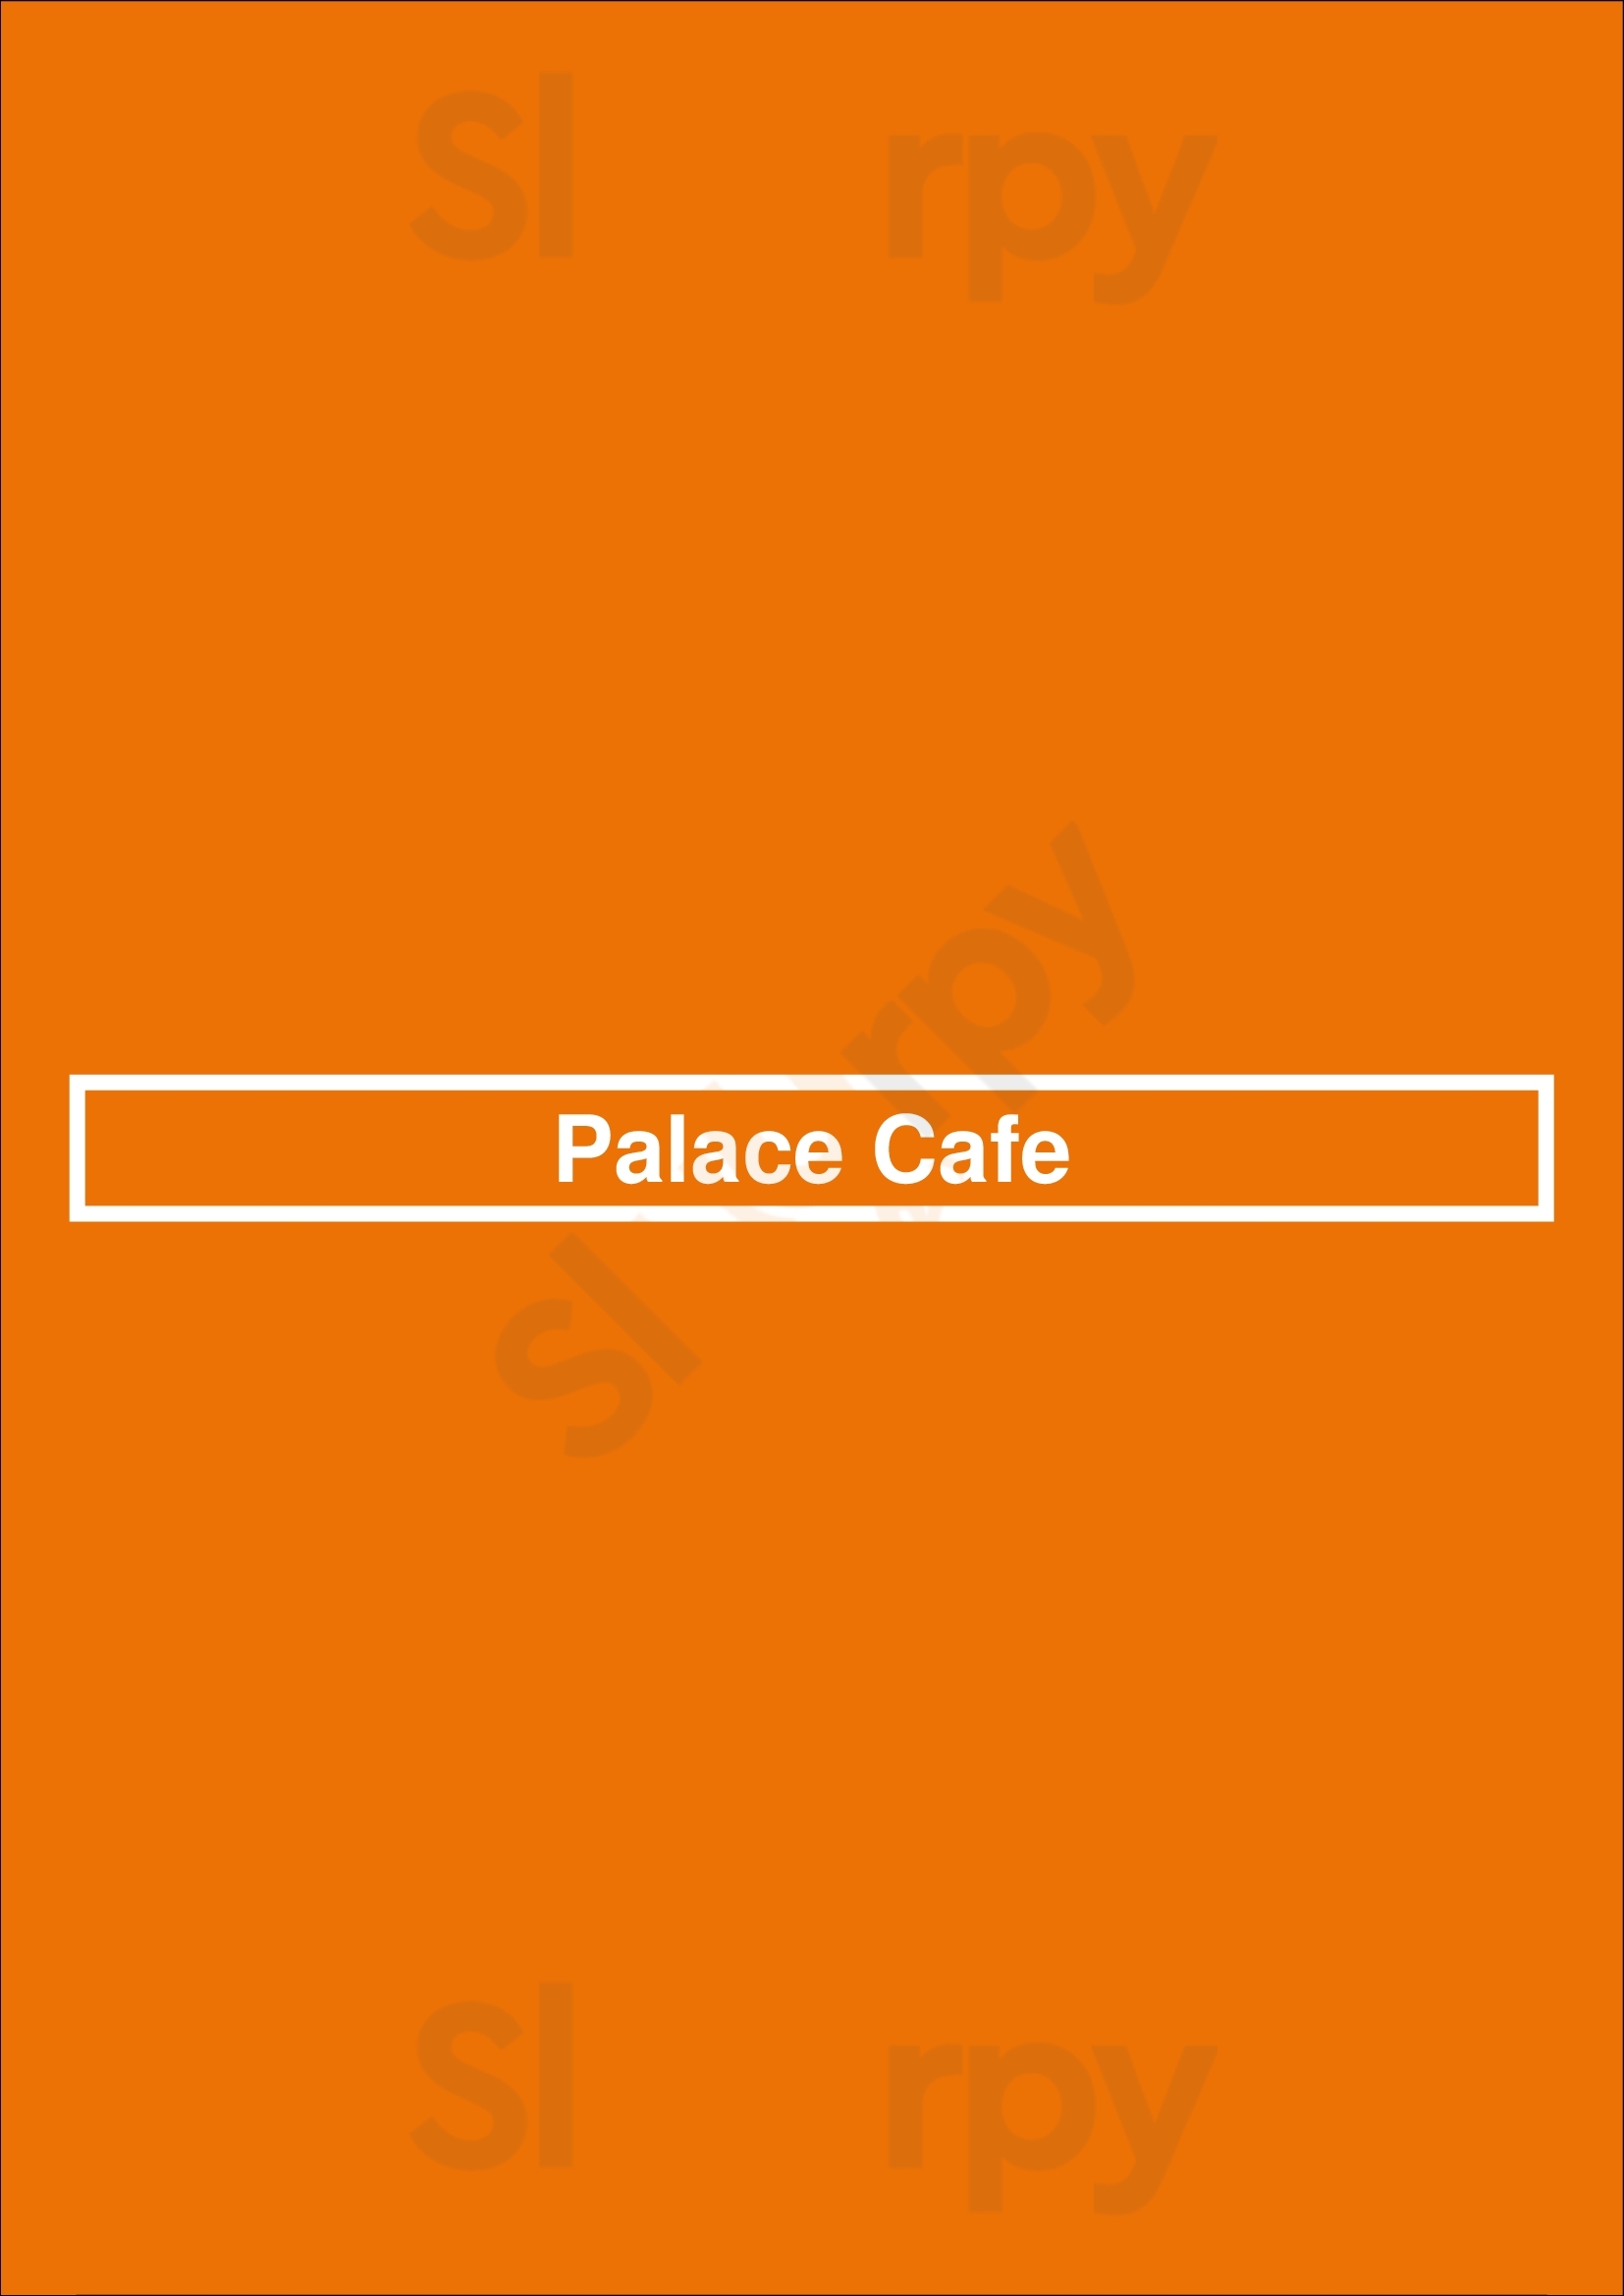 Palace Cafe Tulsa Menu - 1